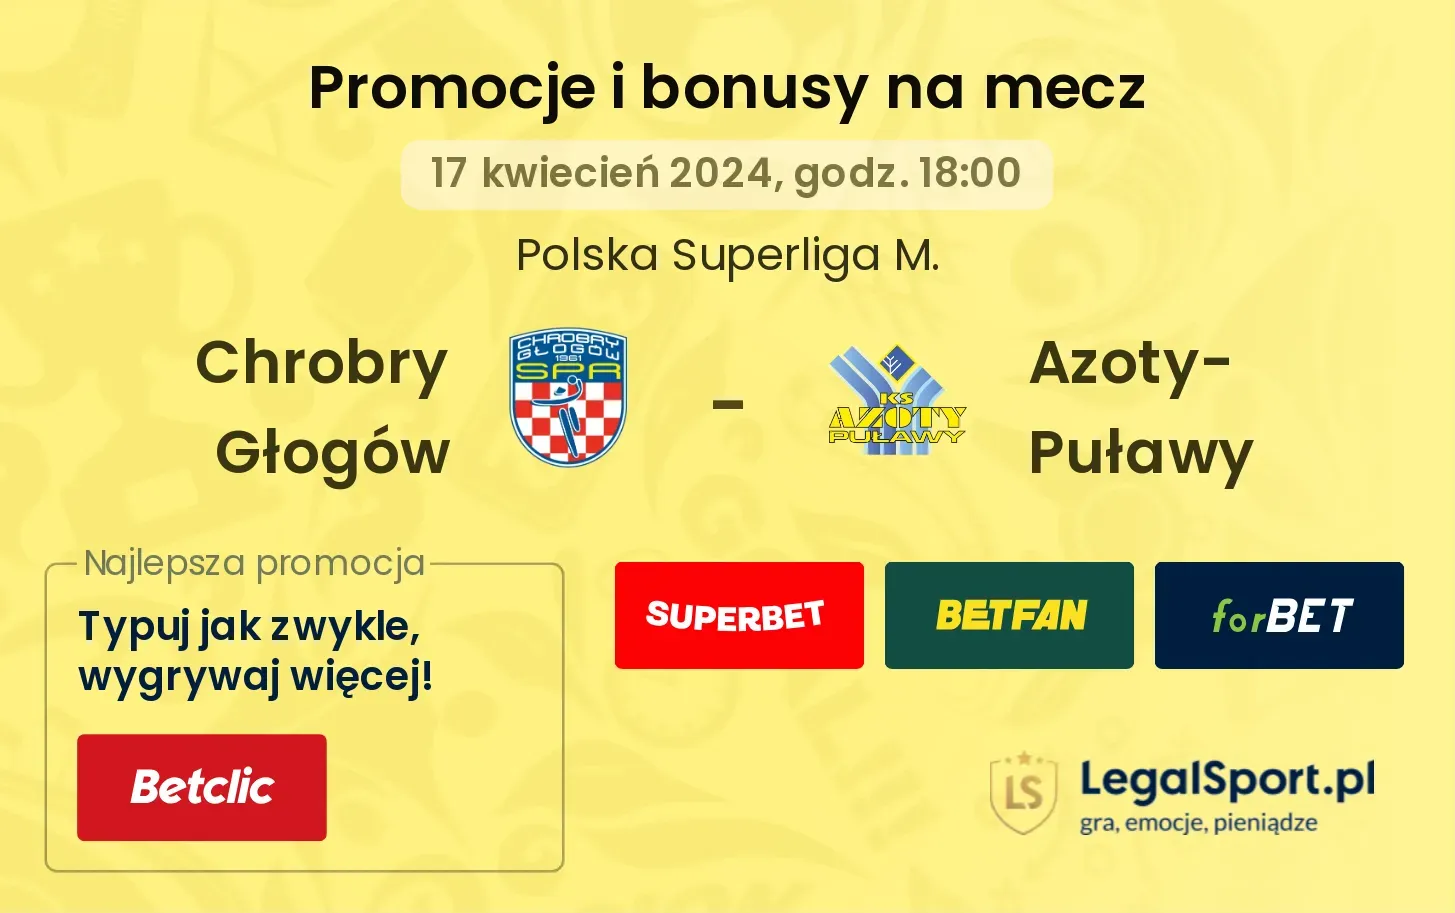 Chrobry Głogów - Azoty-Puławy promocje bonusy na mecz